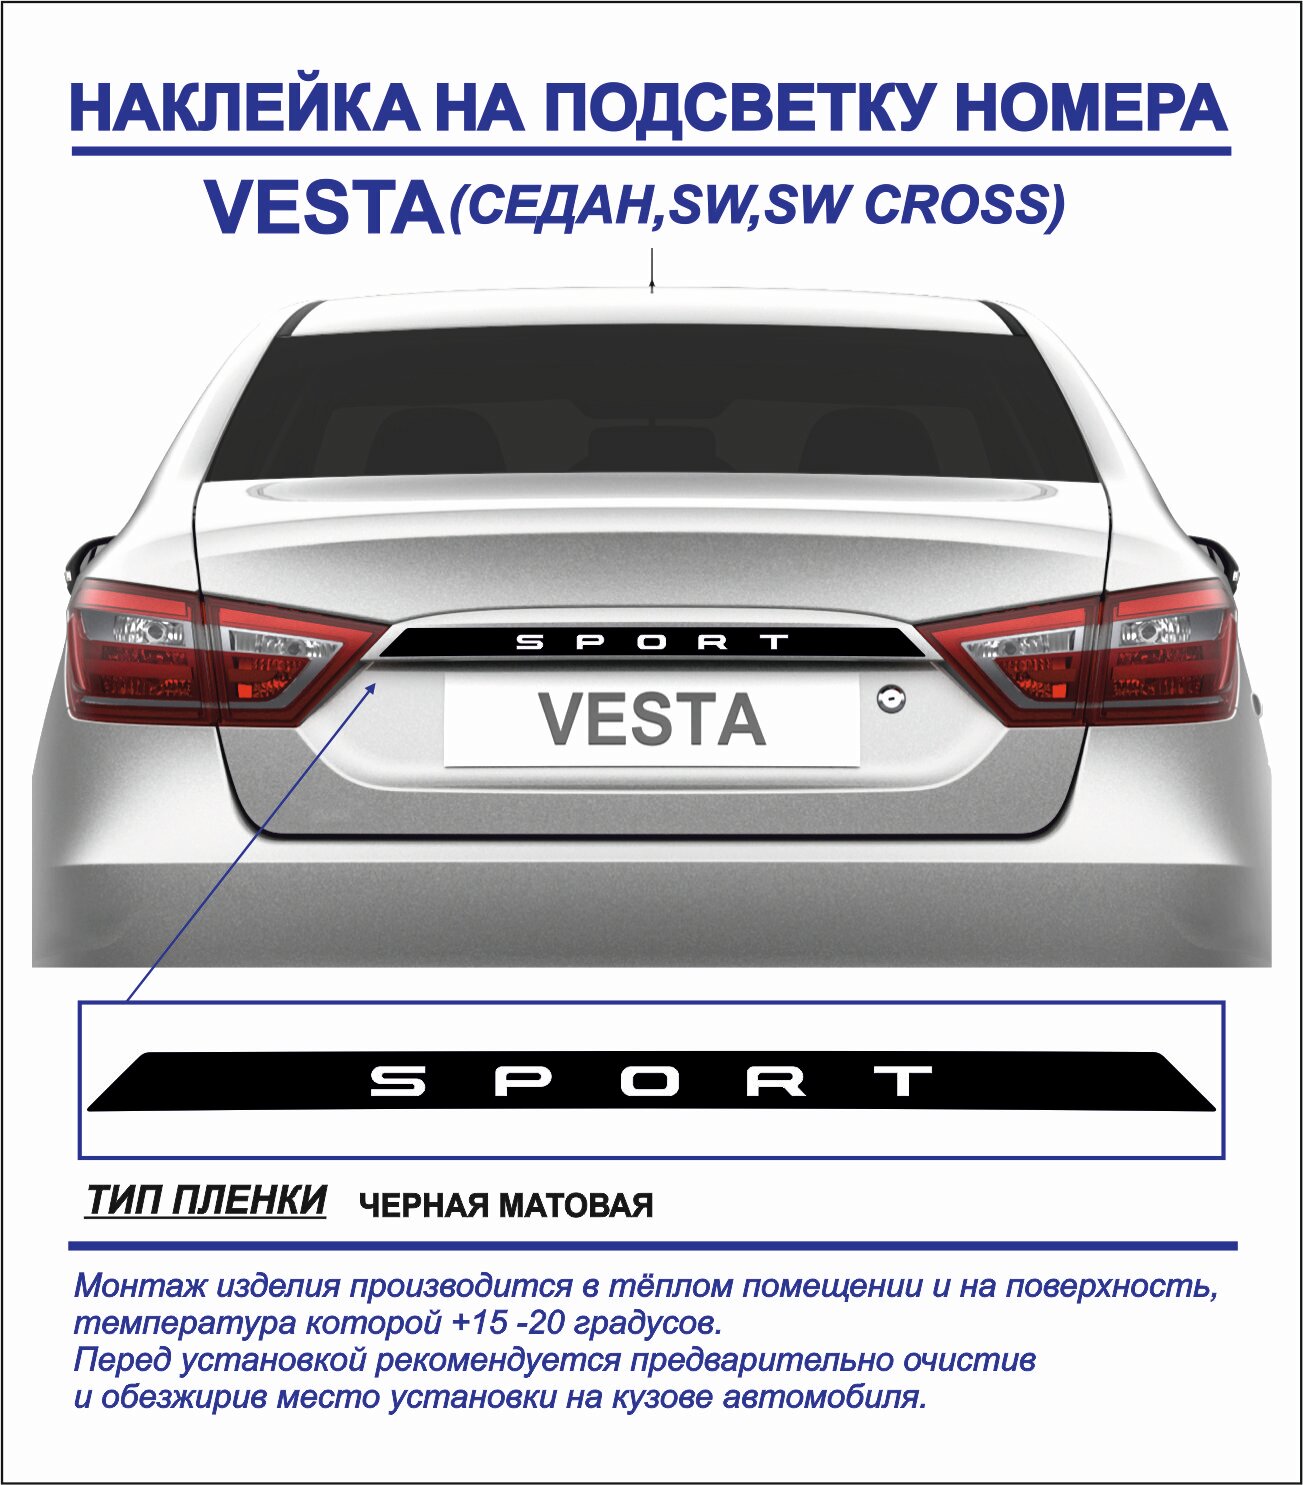 Наклейка-тюнинг Sport на подсветку номера для Vesta седан, sw, sw cross (черная матовая) 1шт.